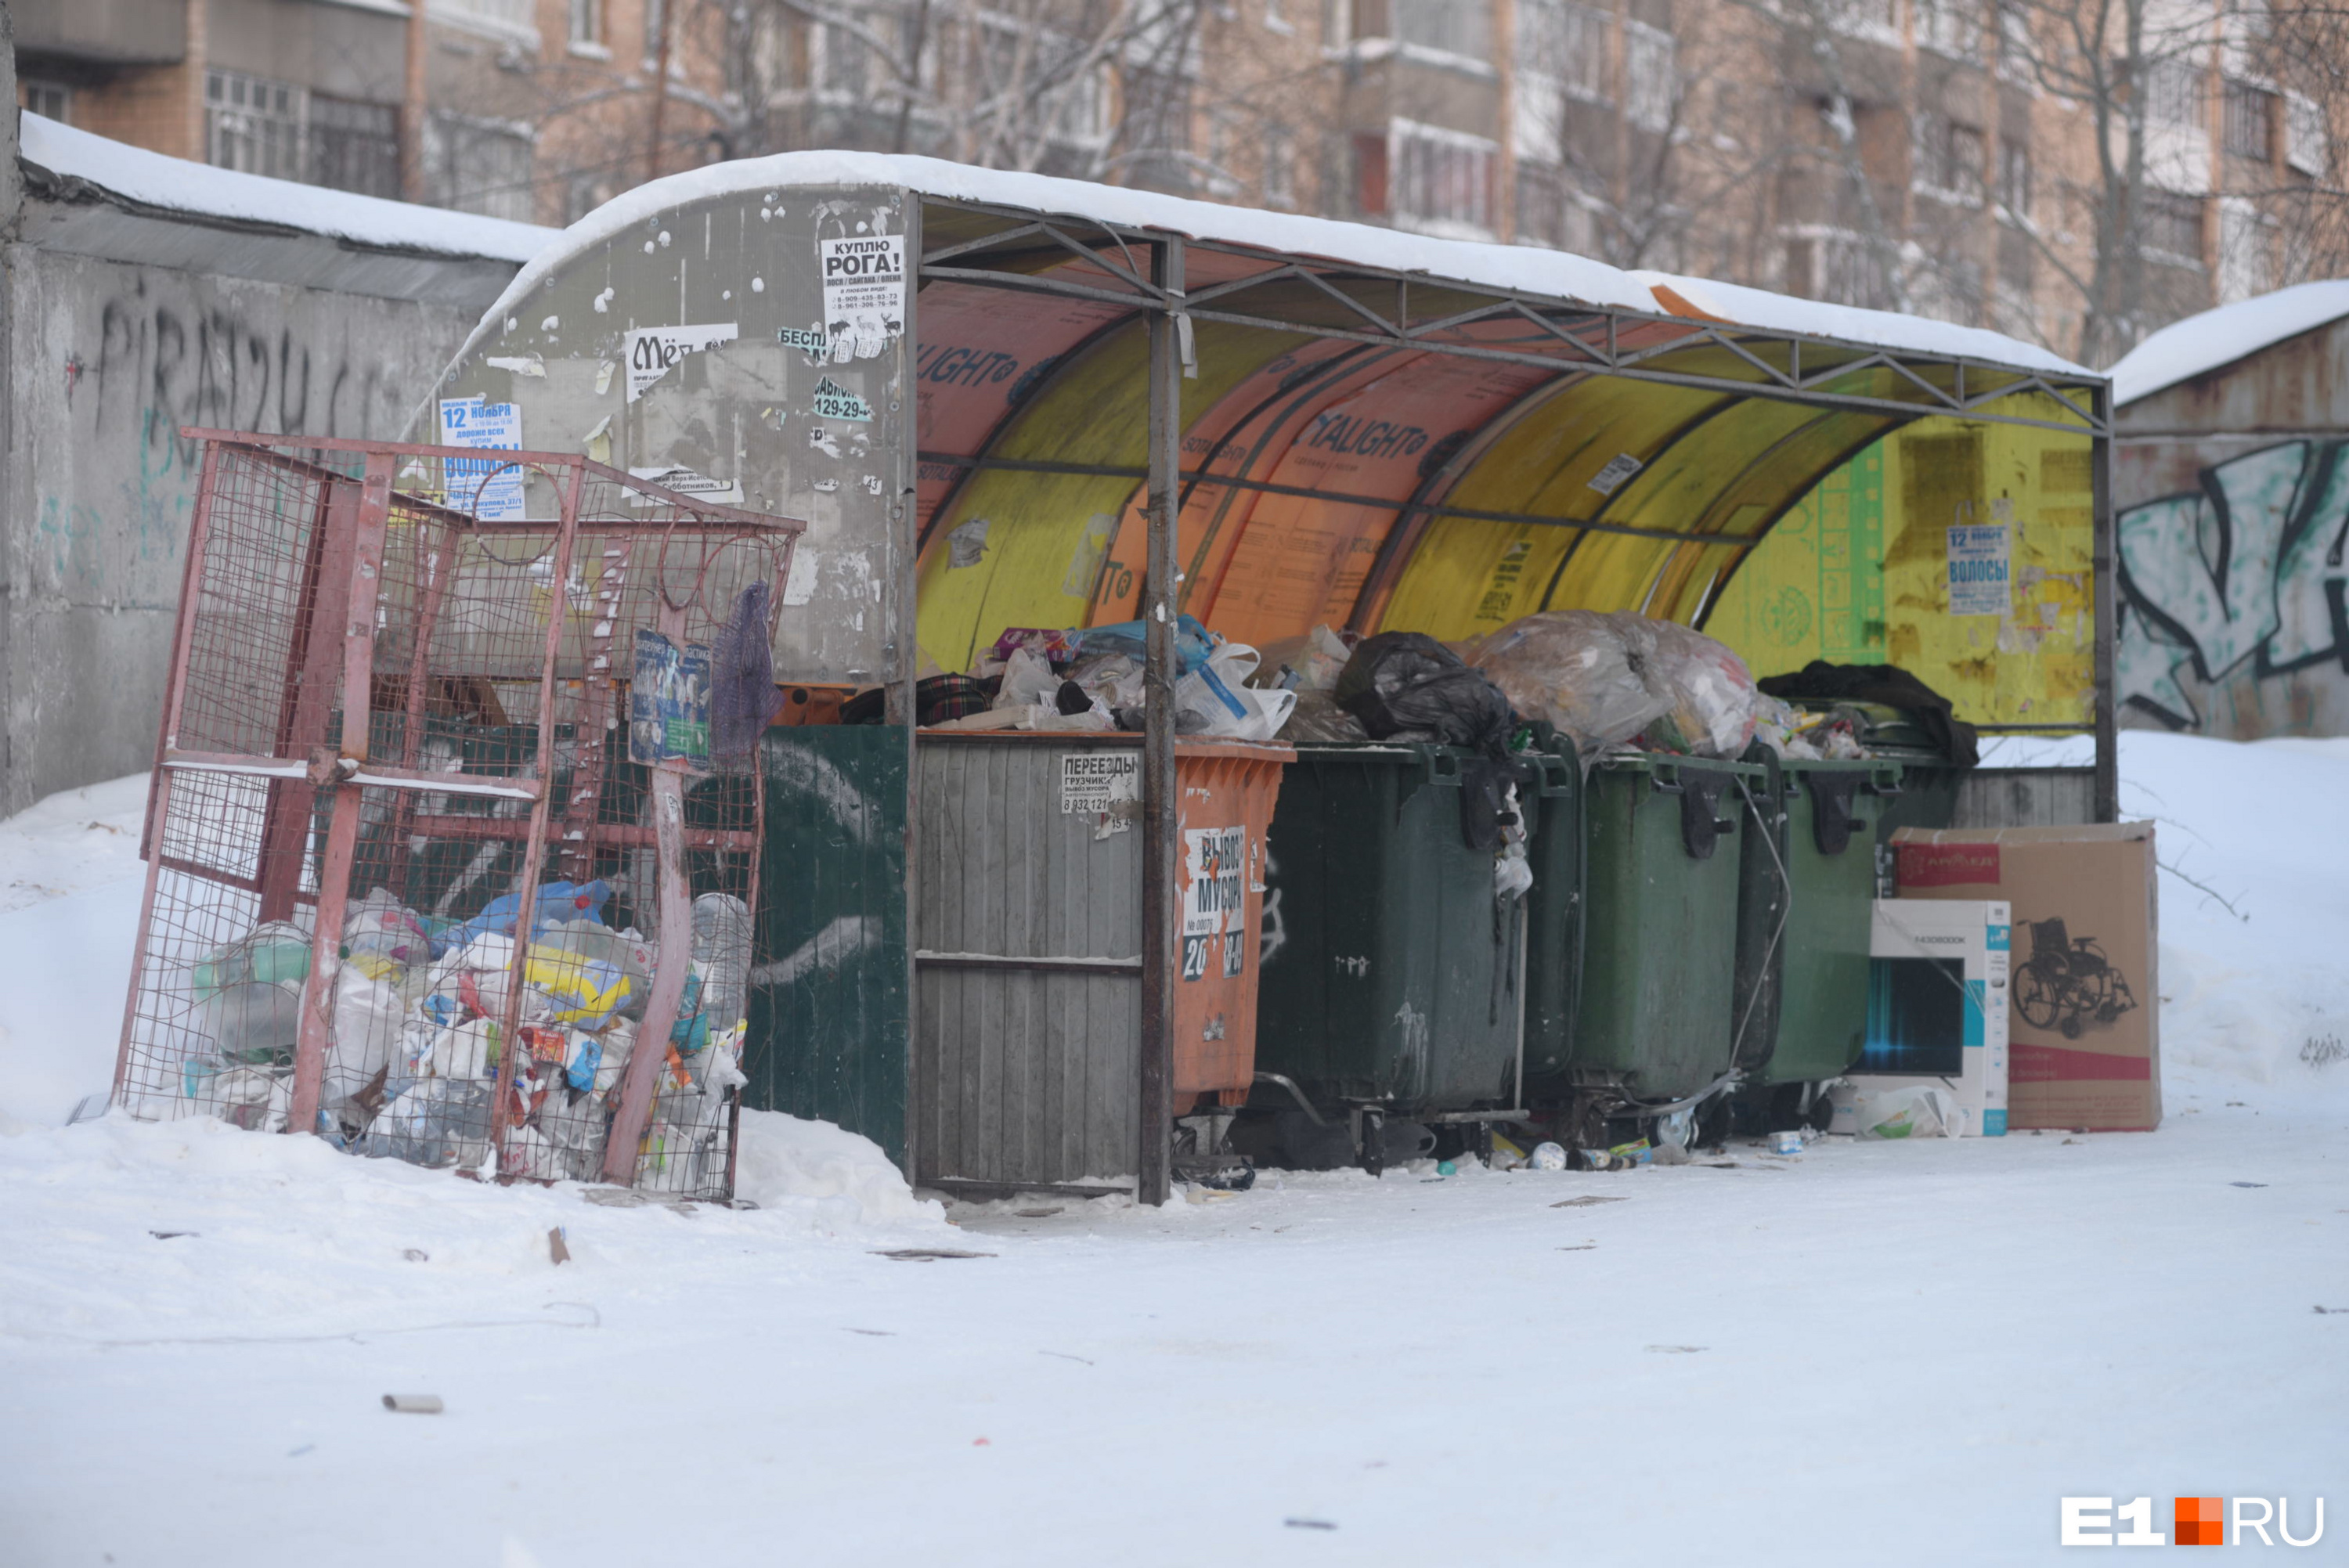 Регоператора «Олерон+» оштрафовали в Забайкалье за невывоз мусора